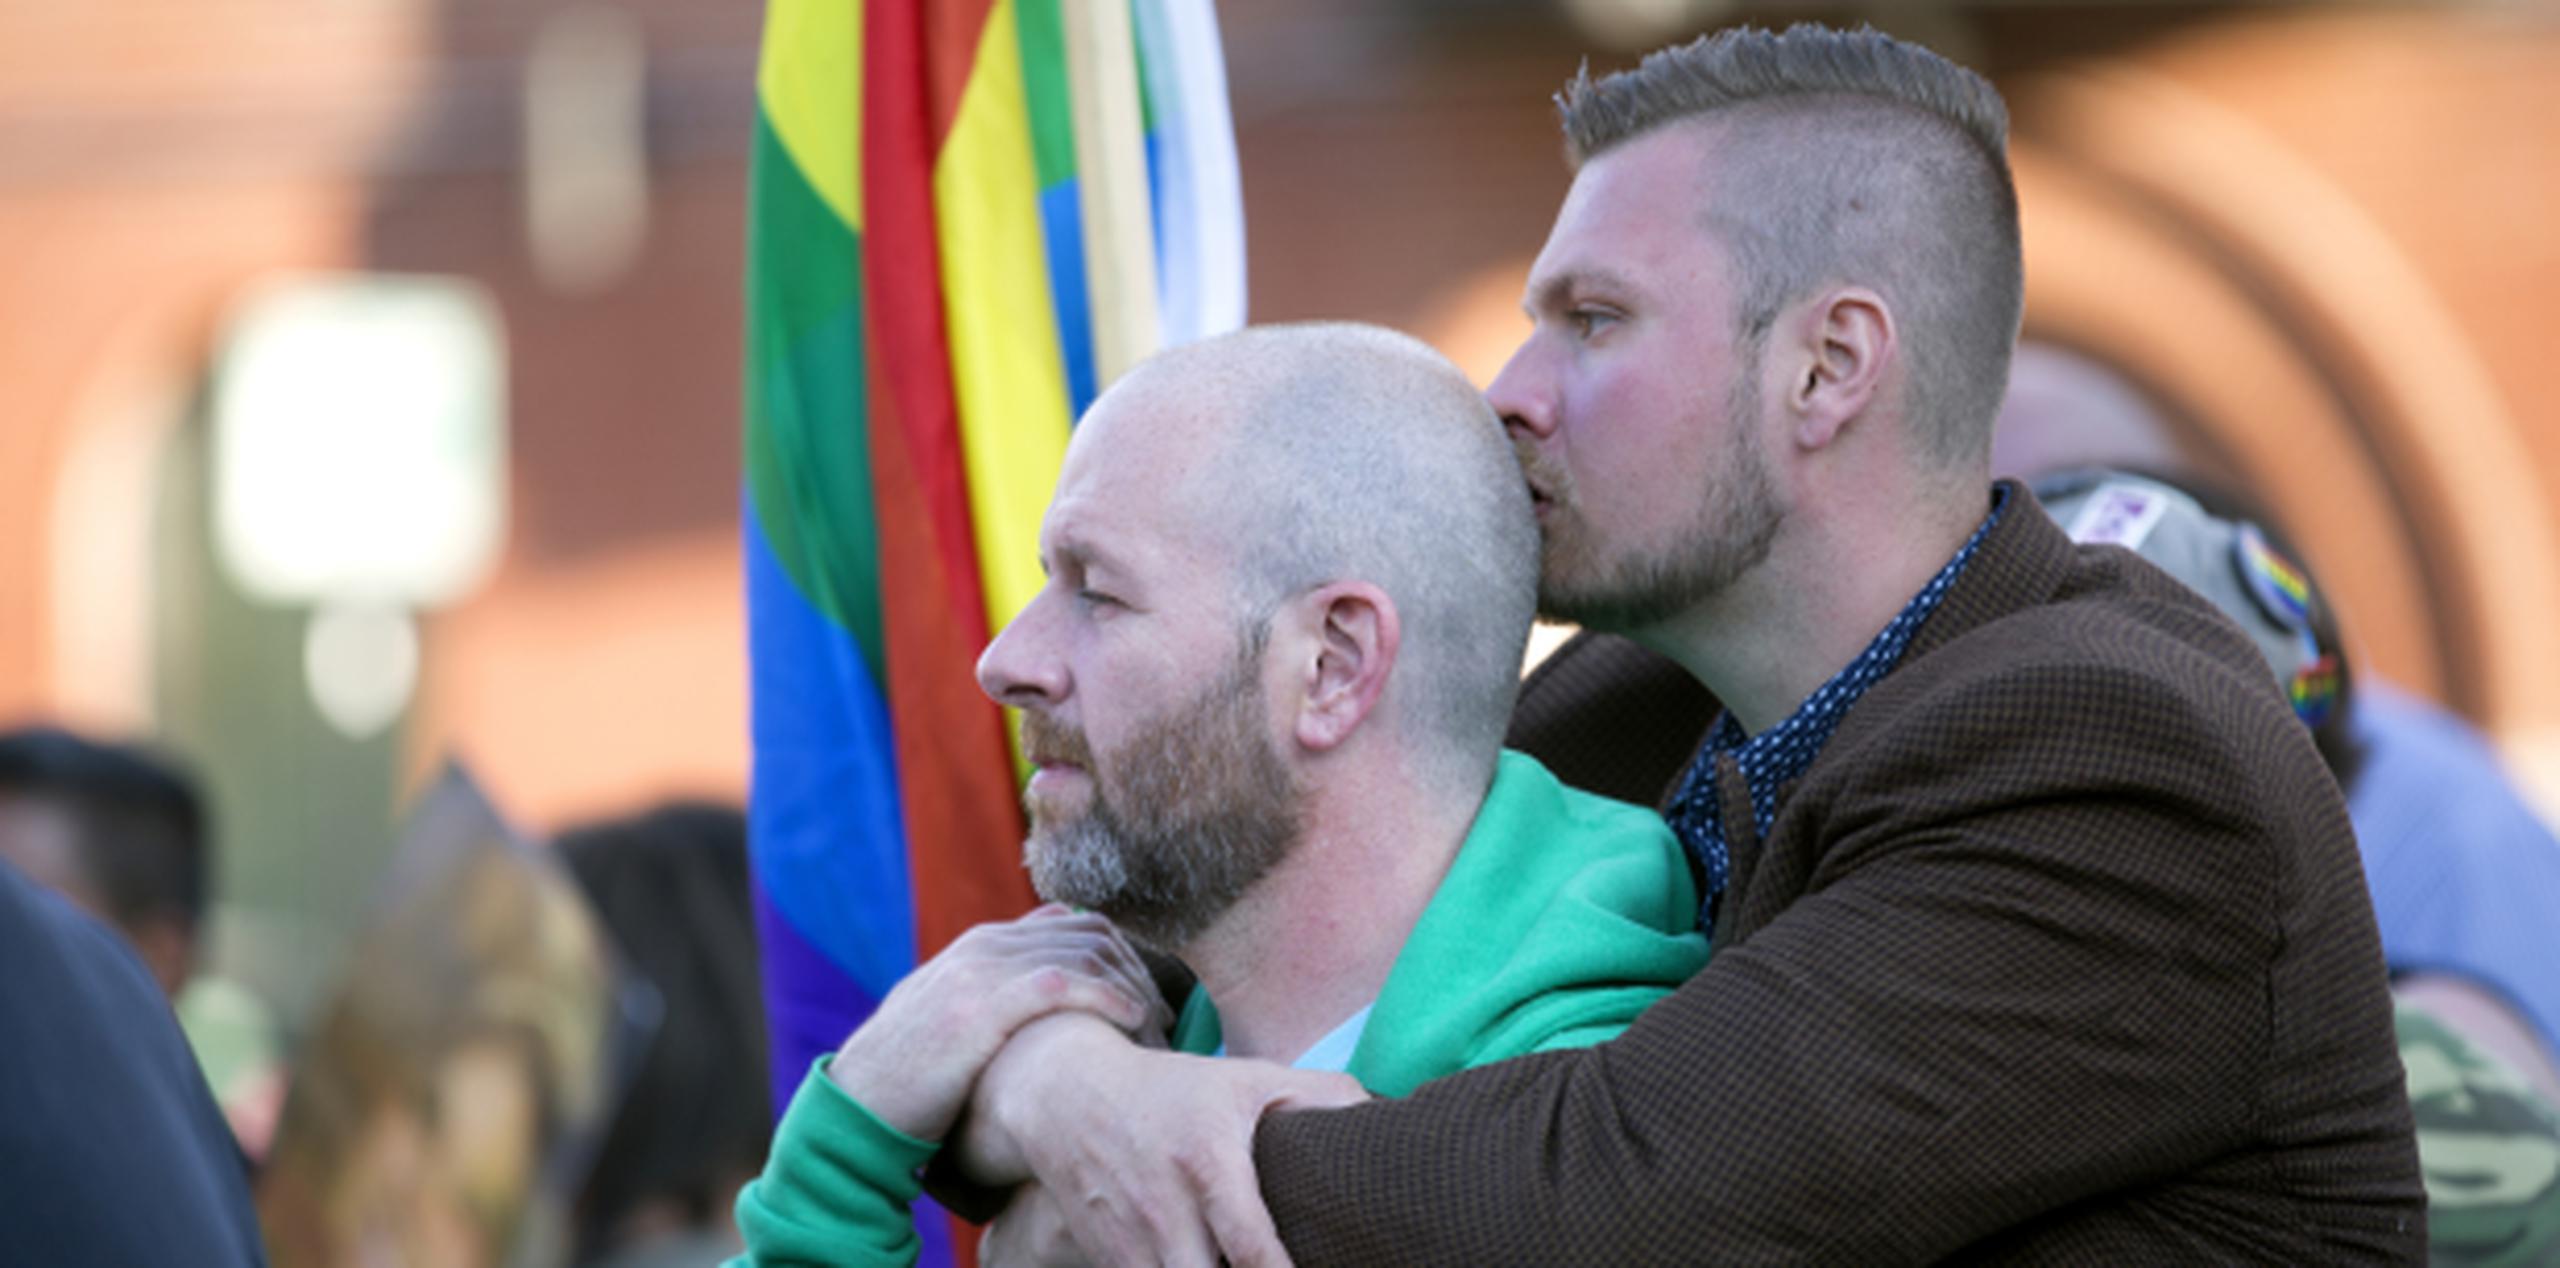 Joshua Oaks (derecha), pone sus brazos alrededor de su compañero de Mark Flanagan durante una vigilia por las víctimas del tiroteo club nocturno de Orlando, en Boystown, Chicago. (Erin Hooley/Chicago Tribune vía AP)